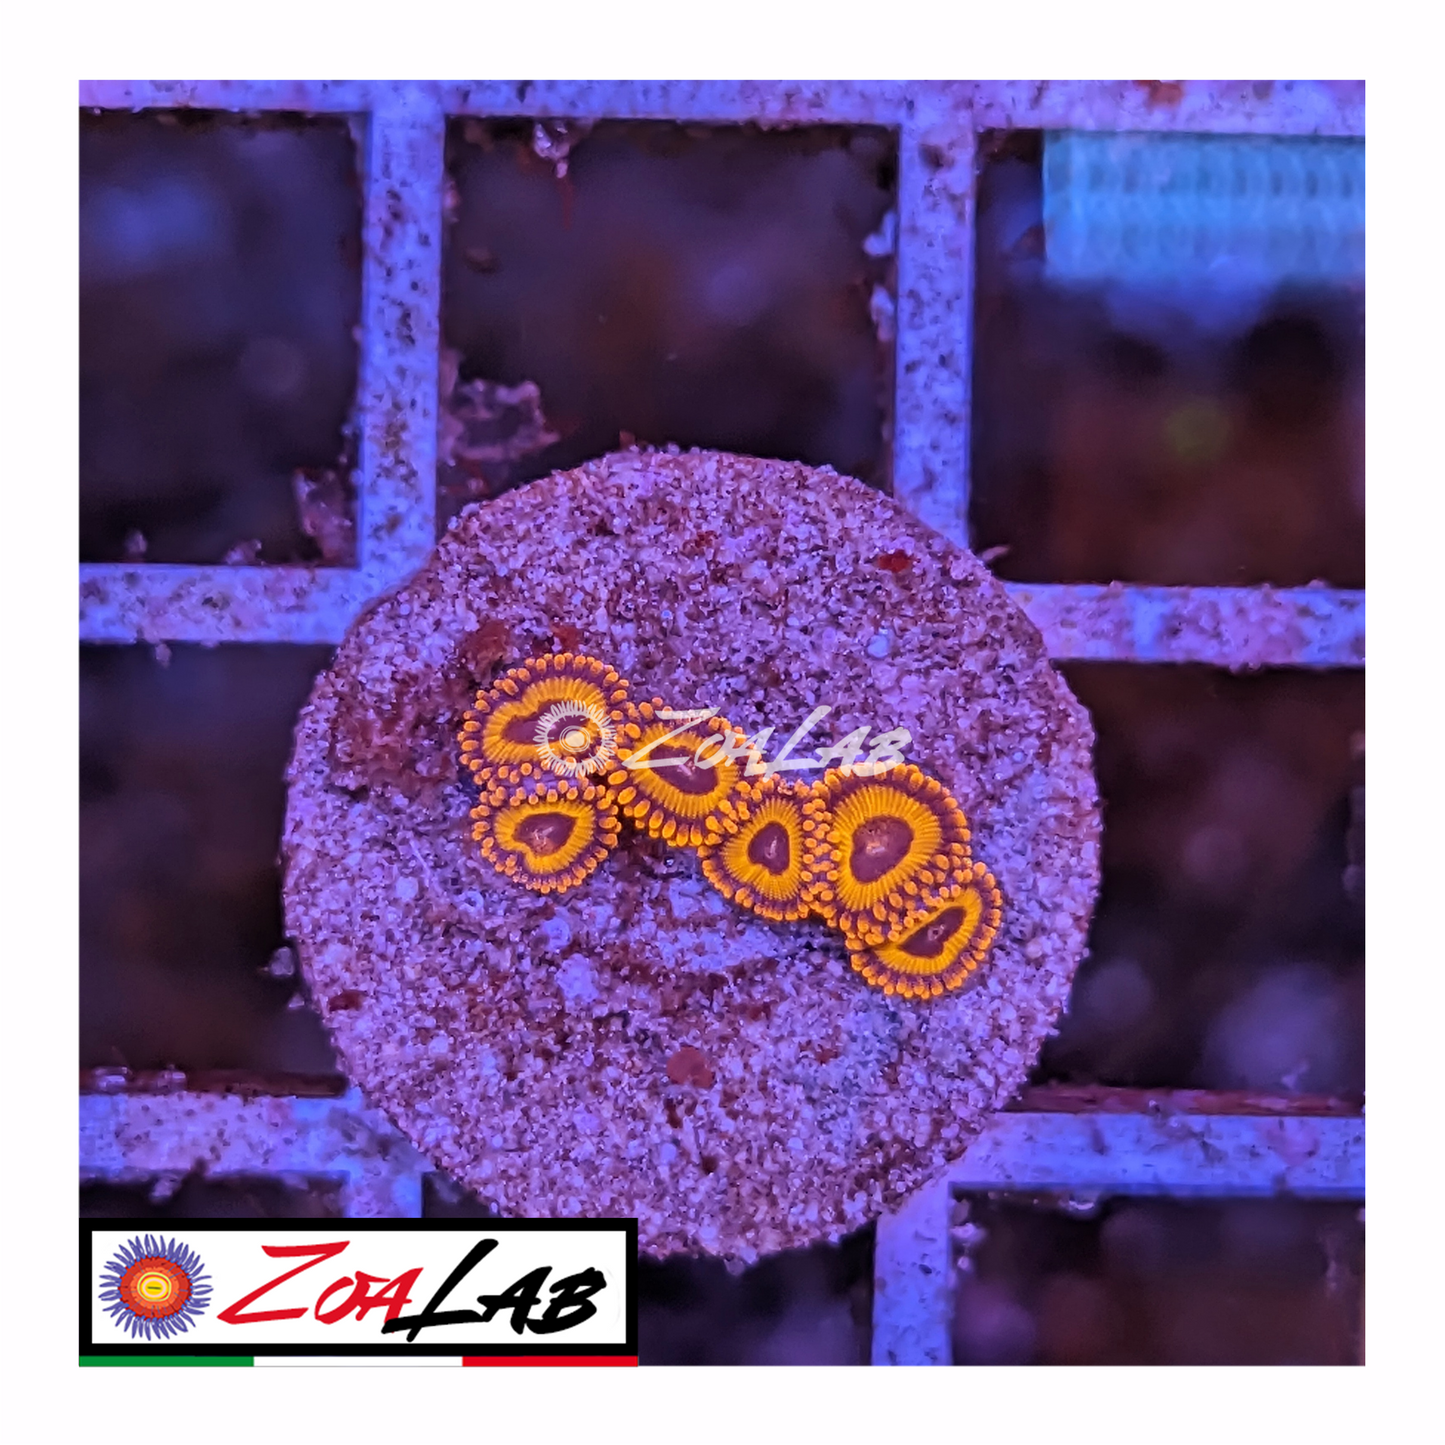 Zoanthus Red oxide